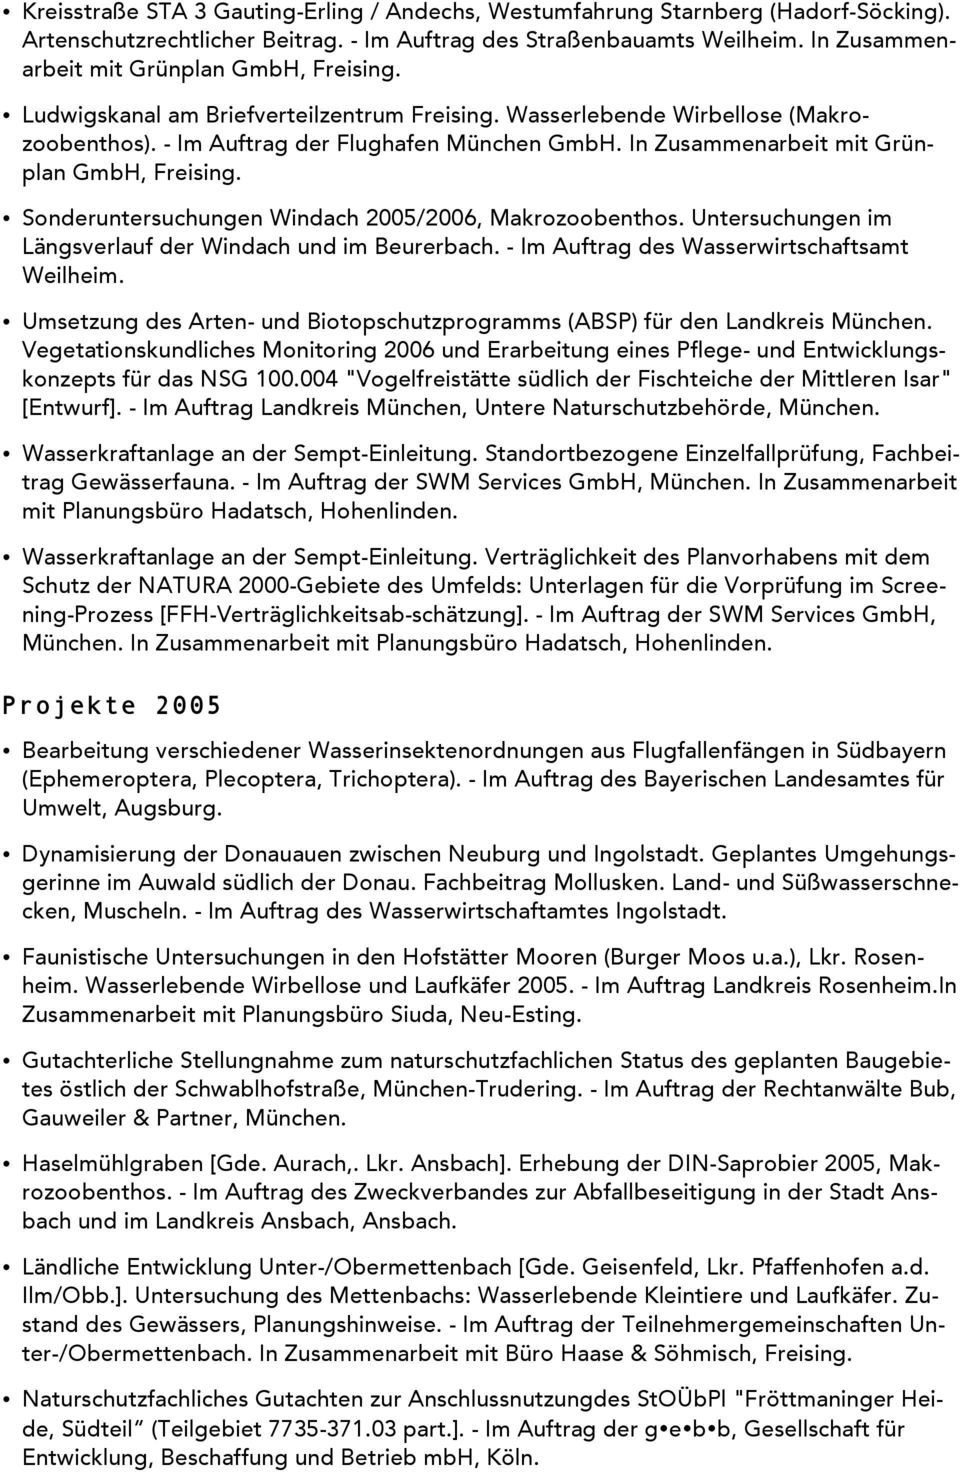 In Zusammenarbeit mit Grünplan GmbH, Freising. Sonderuntersuchungen Windach 2005/2006, Makrozoobenthos. Untersuchungen im Längsverlauf der Windach und im Beurerbach.